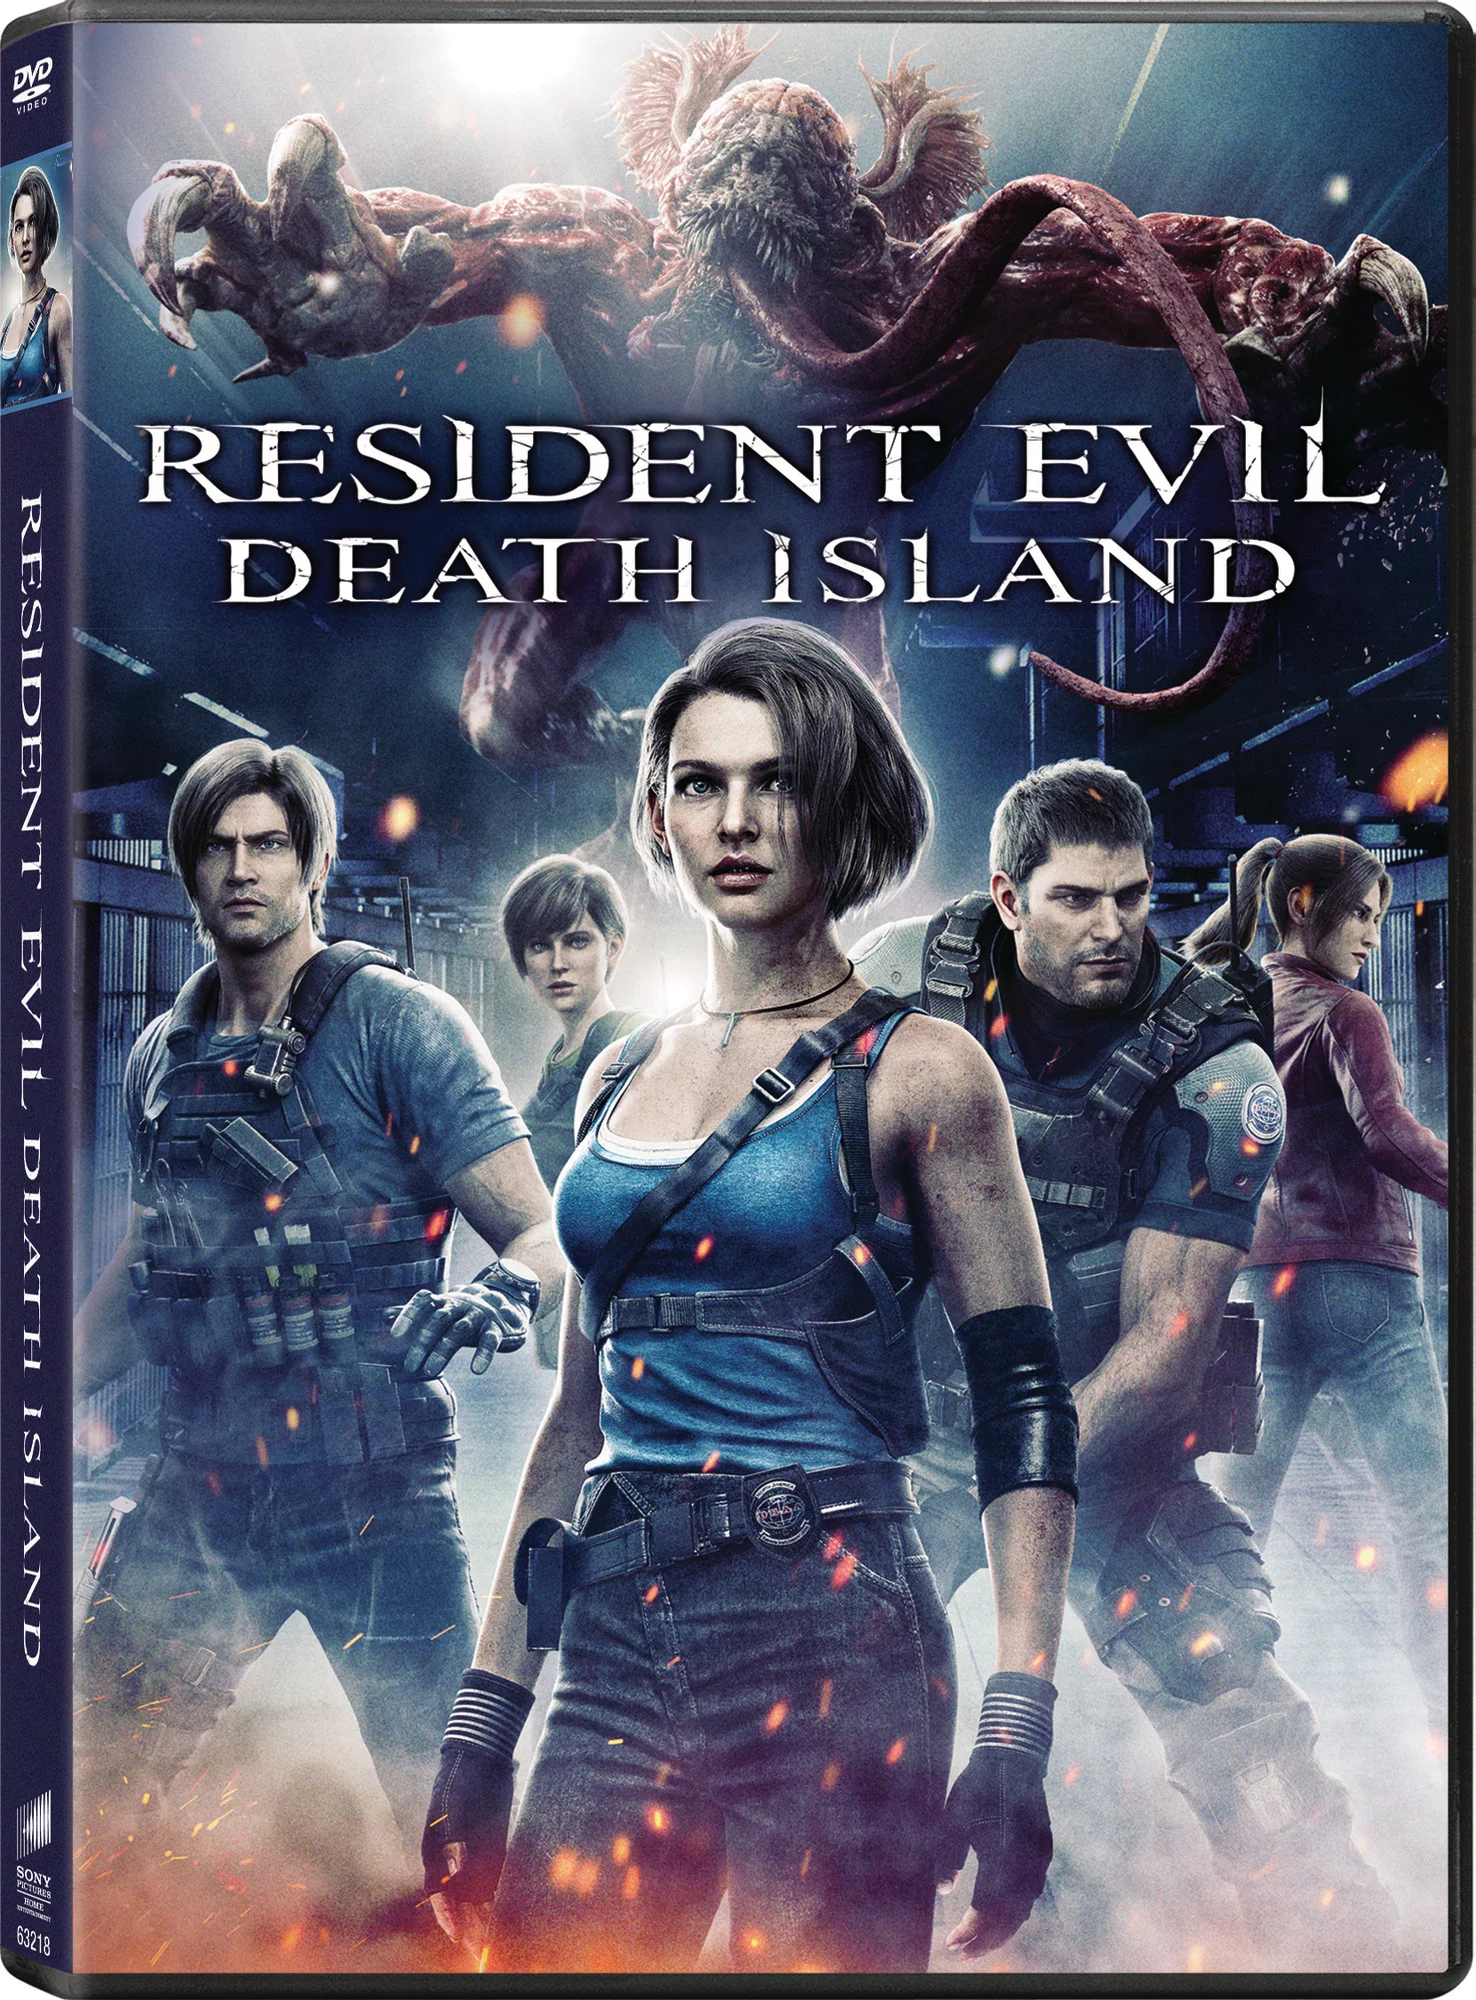 Resident Evil (TV series) - Wikipedia